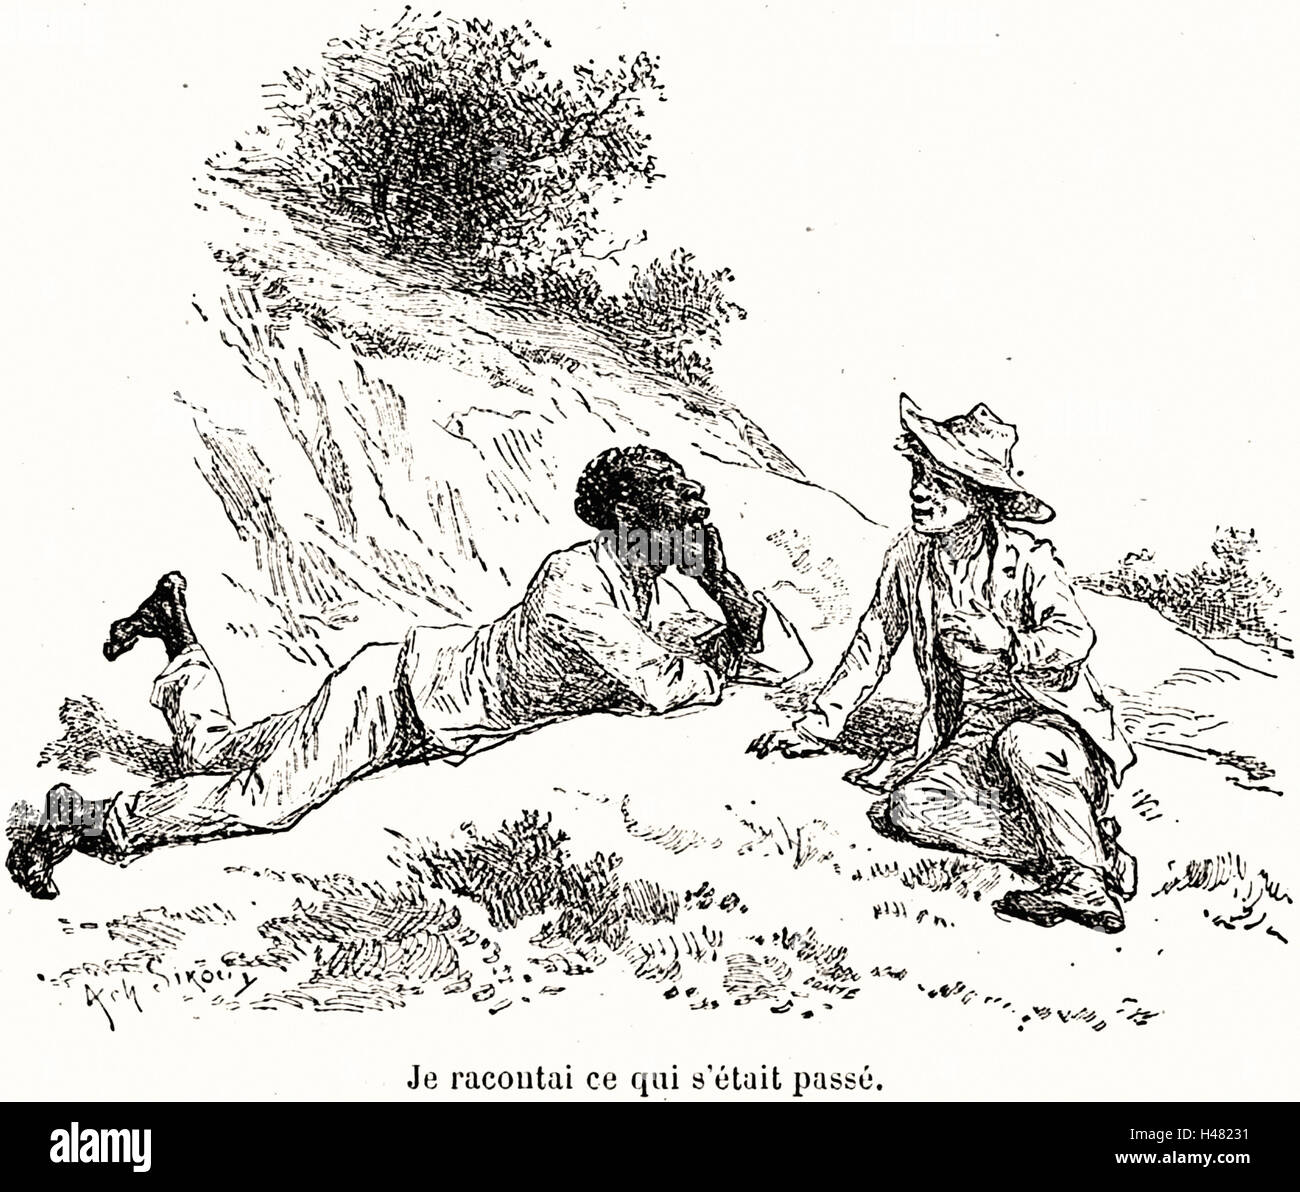 Mark Twain: Les Aventures de Huck Finn, Illustrationen Achille Sirouy - 1886 Stockfoto